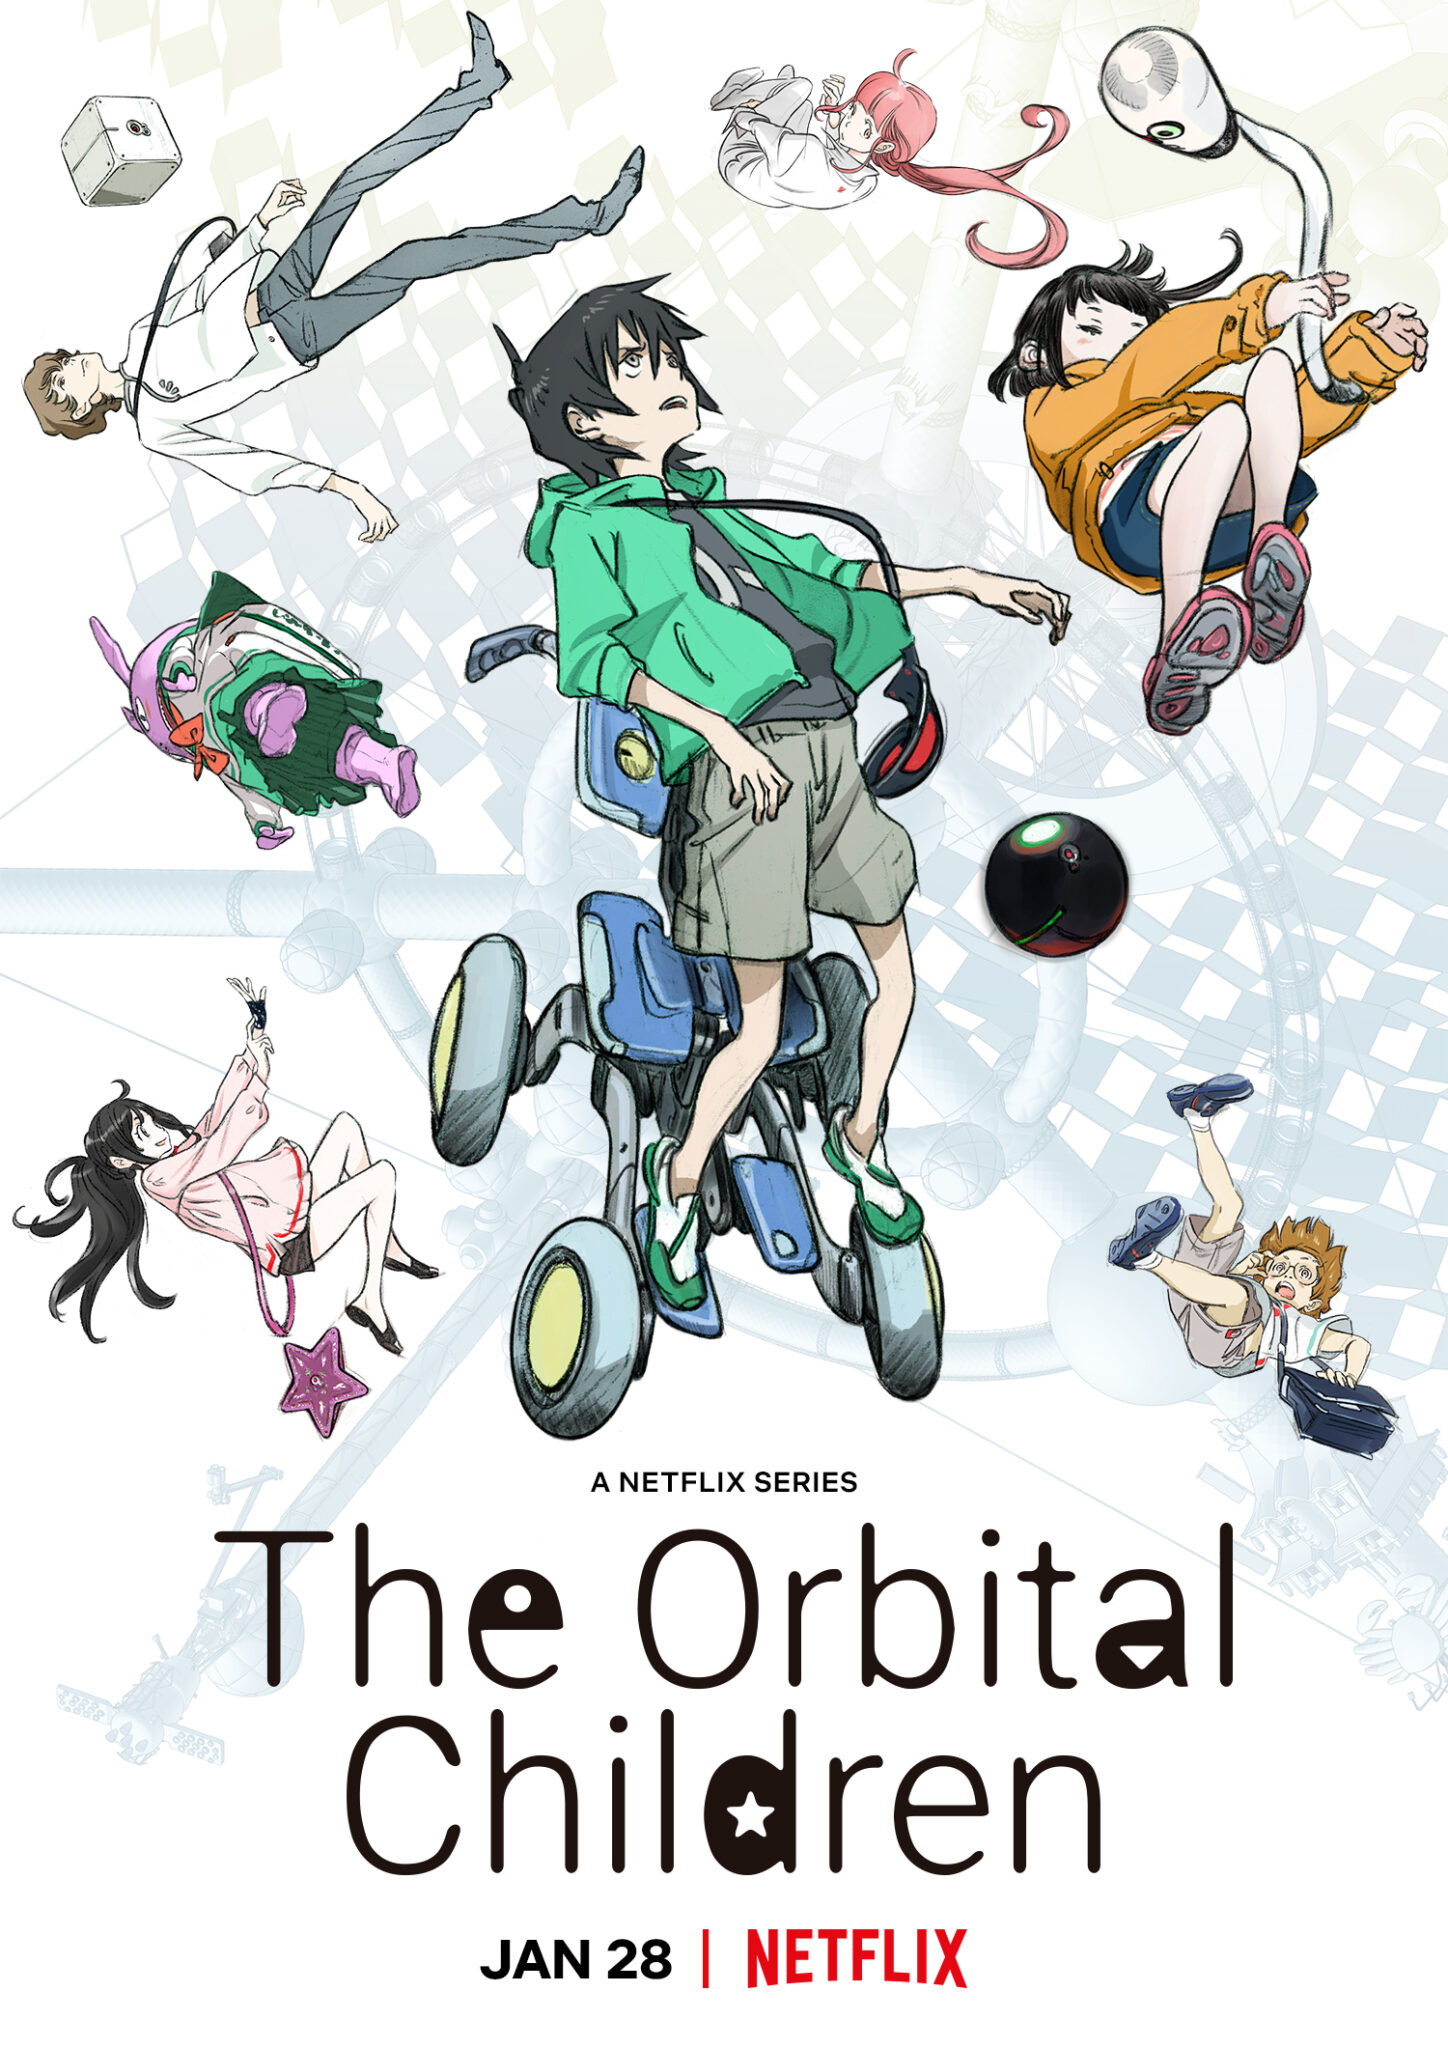 Das Poster zur Animosere The Orbital children zeigt vor weißem Hintergrund einige Figuren schwebend.